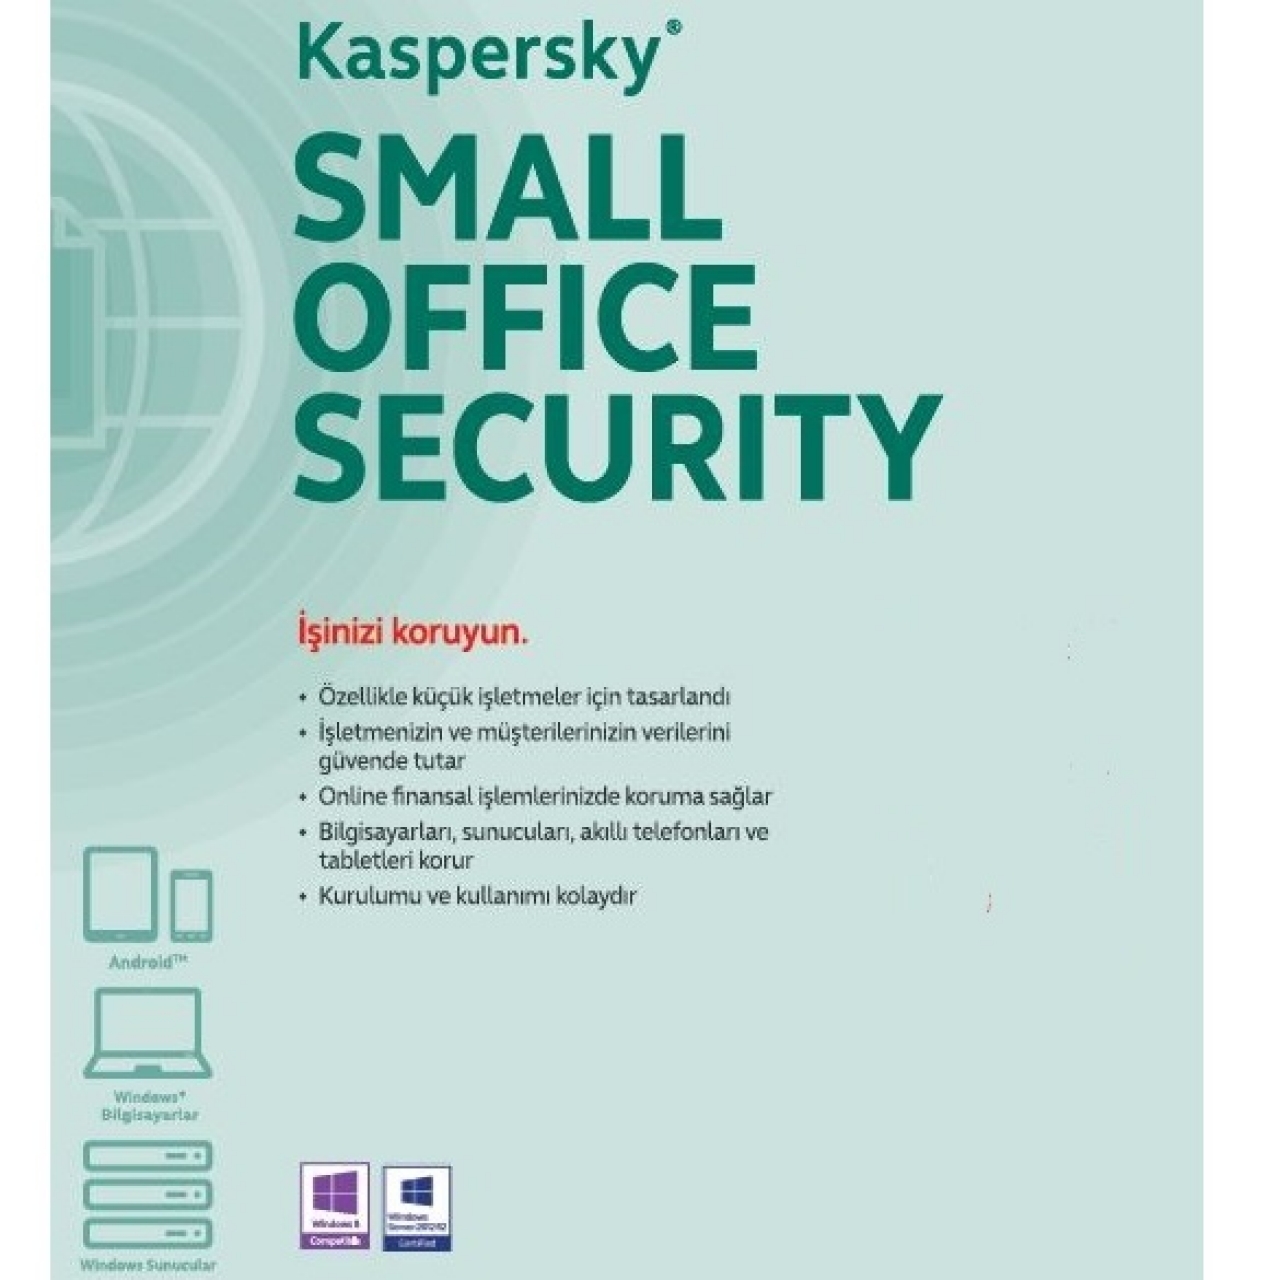 KASPERSKY Small Office Security 1yıl 1server + 10kullanıcı + 10 mobil cihaz